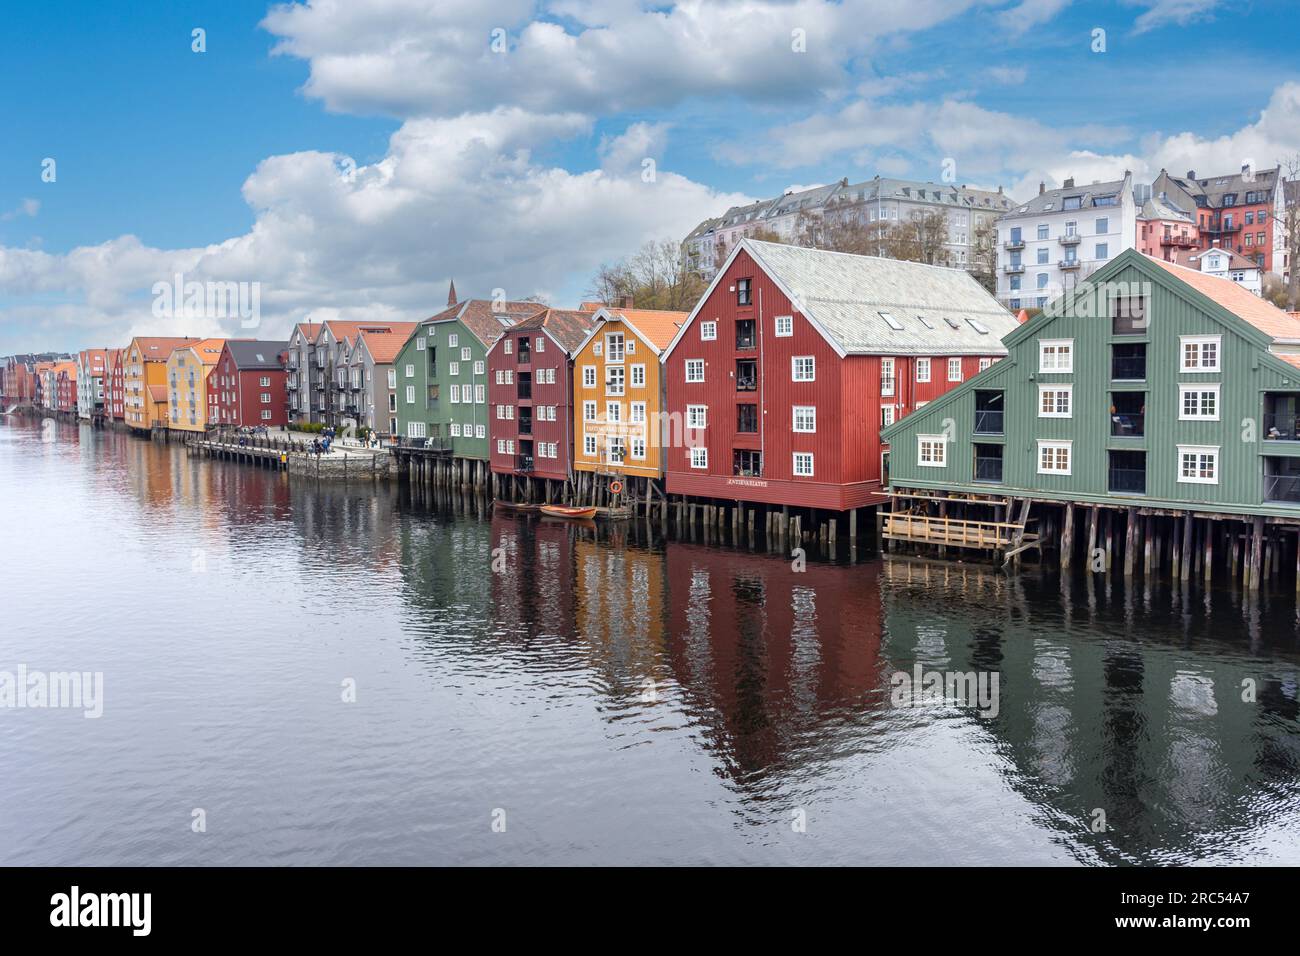 Entrepôts colorés du 17e siècle sur la rivière Nidelva depuis le pont de la vieille ville (Gamle bybro), le centre-ville, Trondheim, comté de Trøndelag, Norvège Banque D'Images